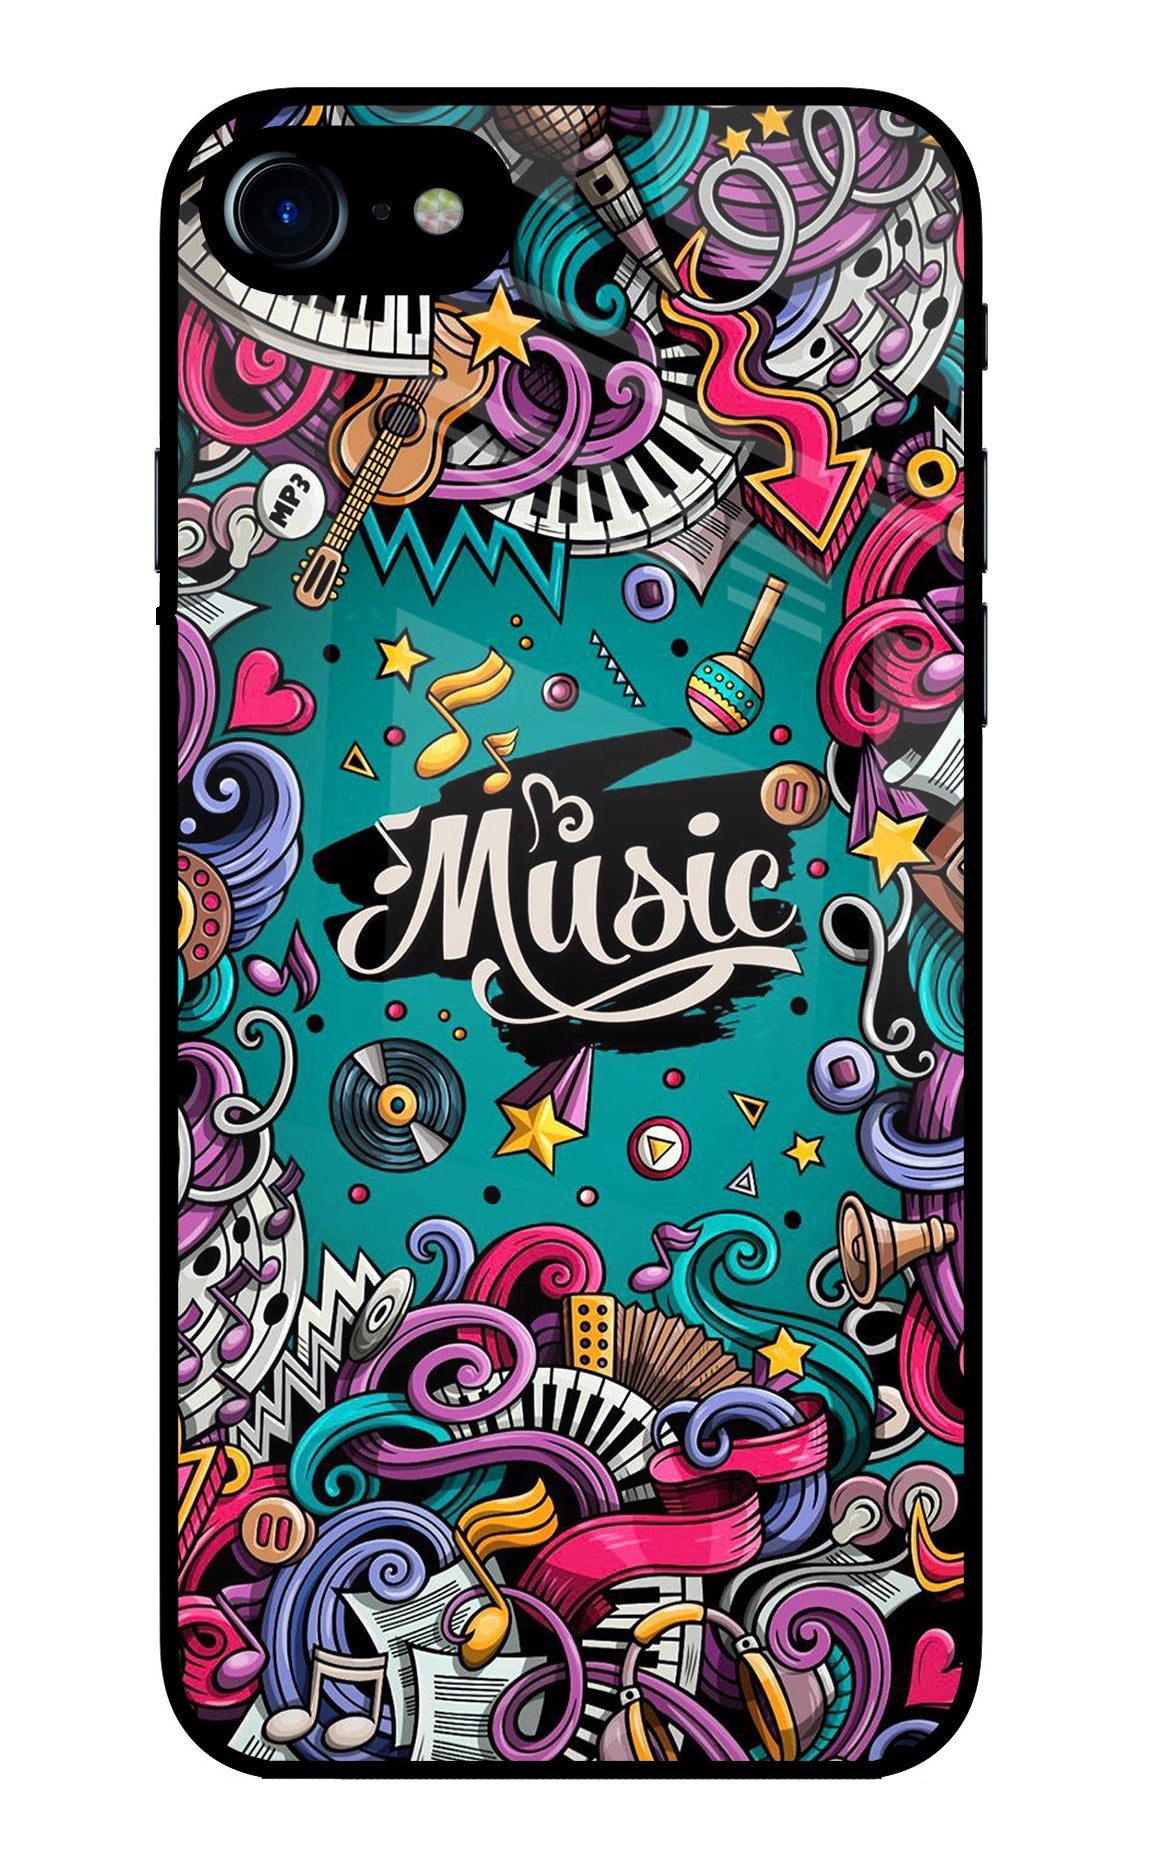 Music Graffiti iPhone 7/7s Glass Case